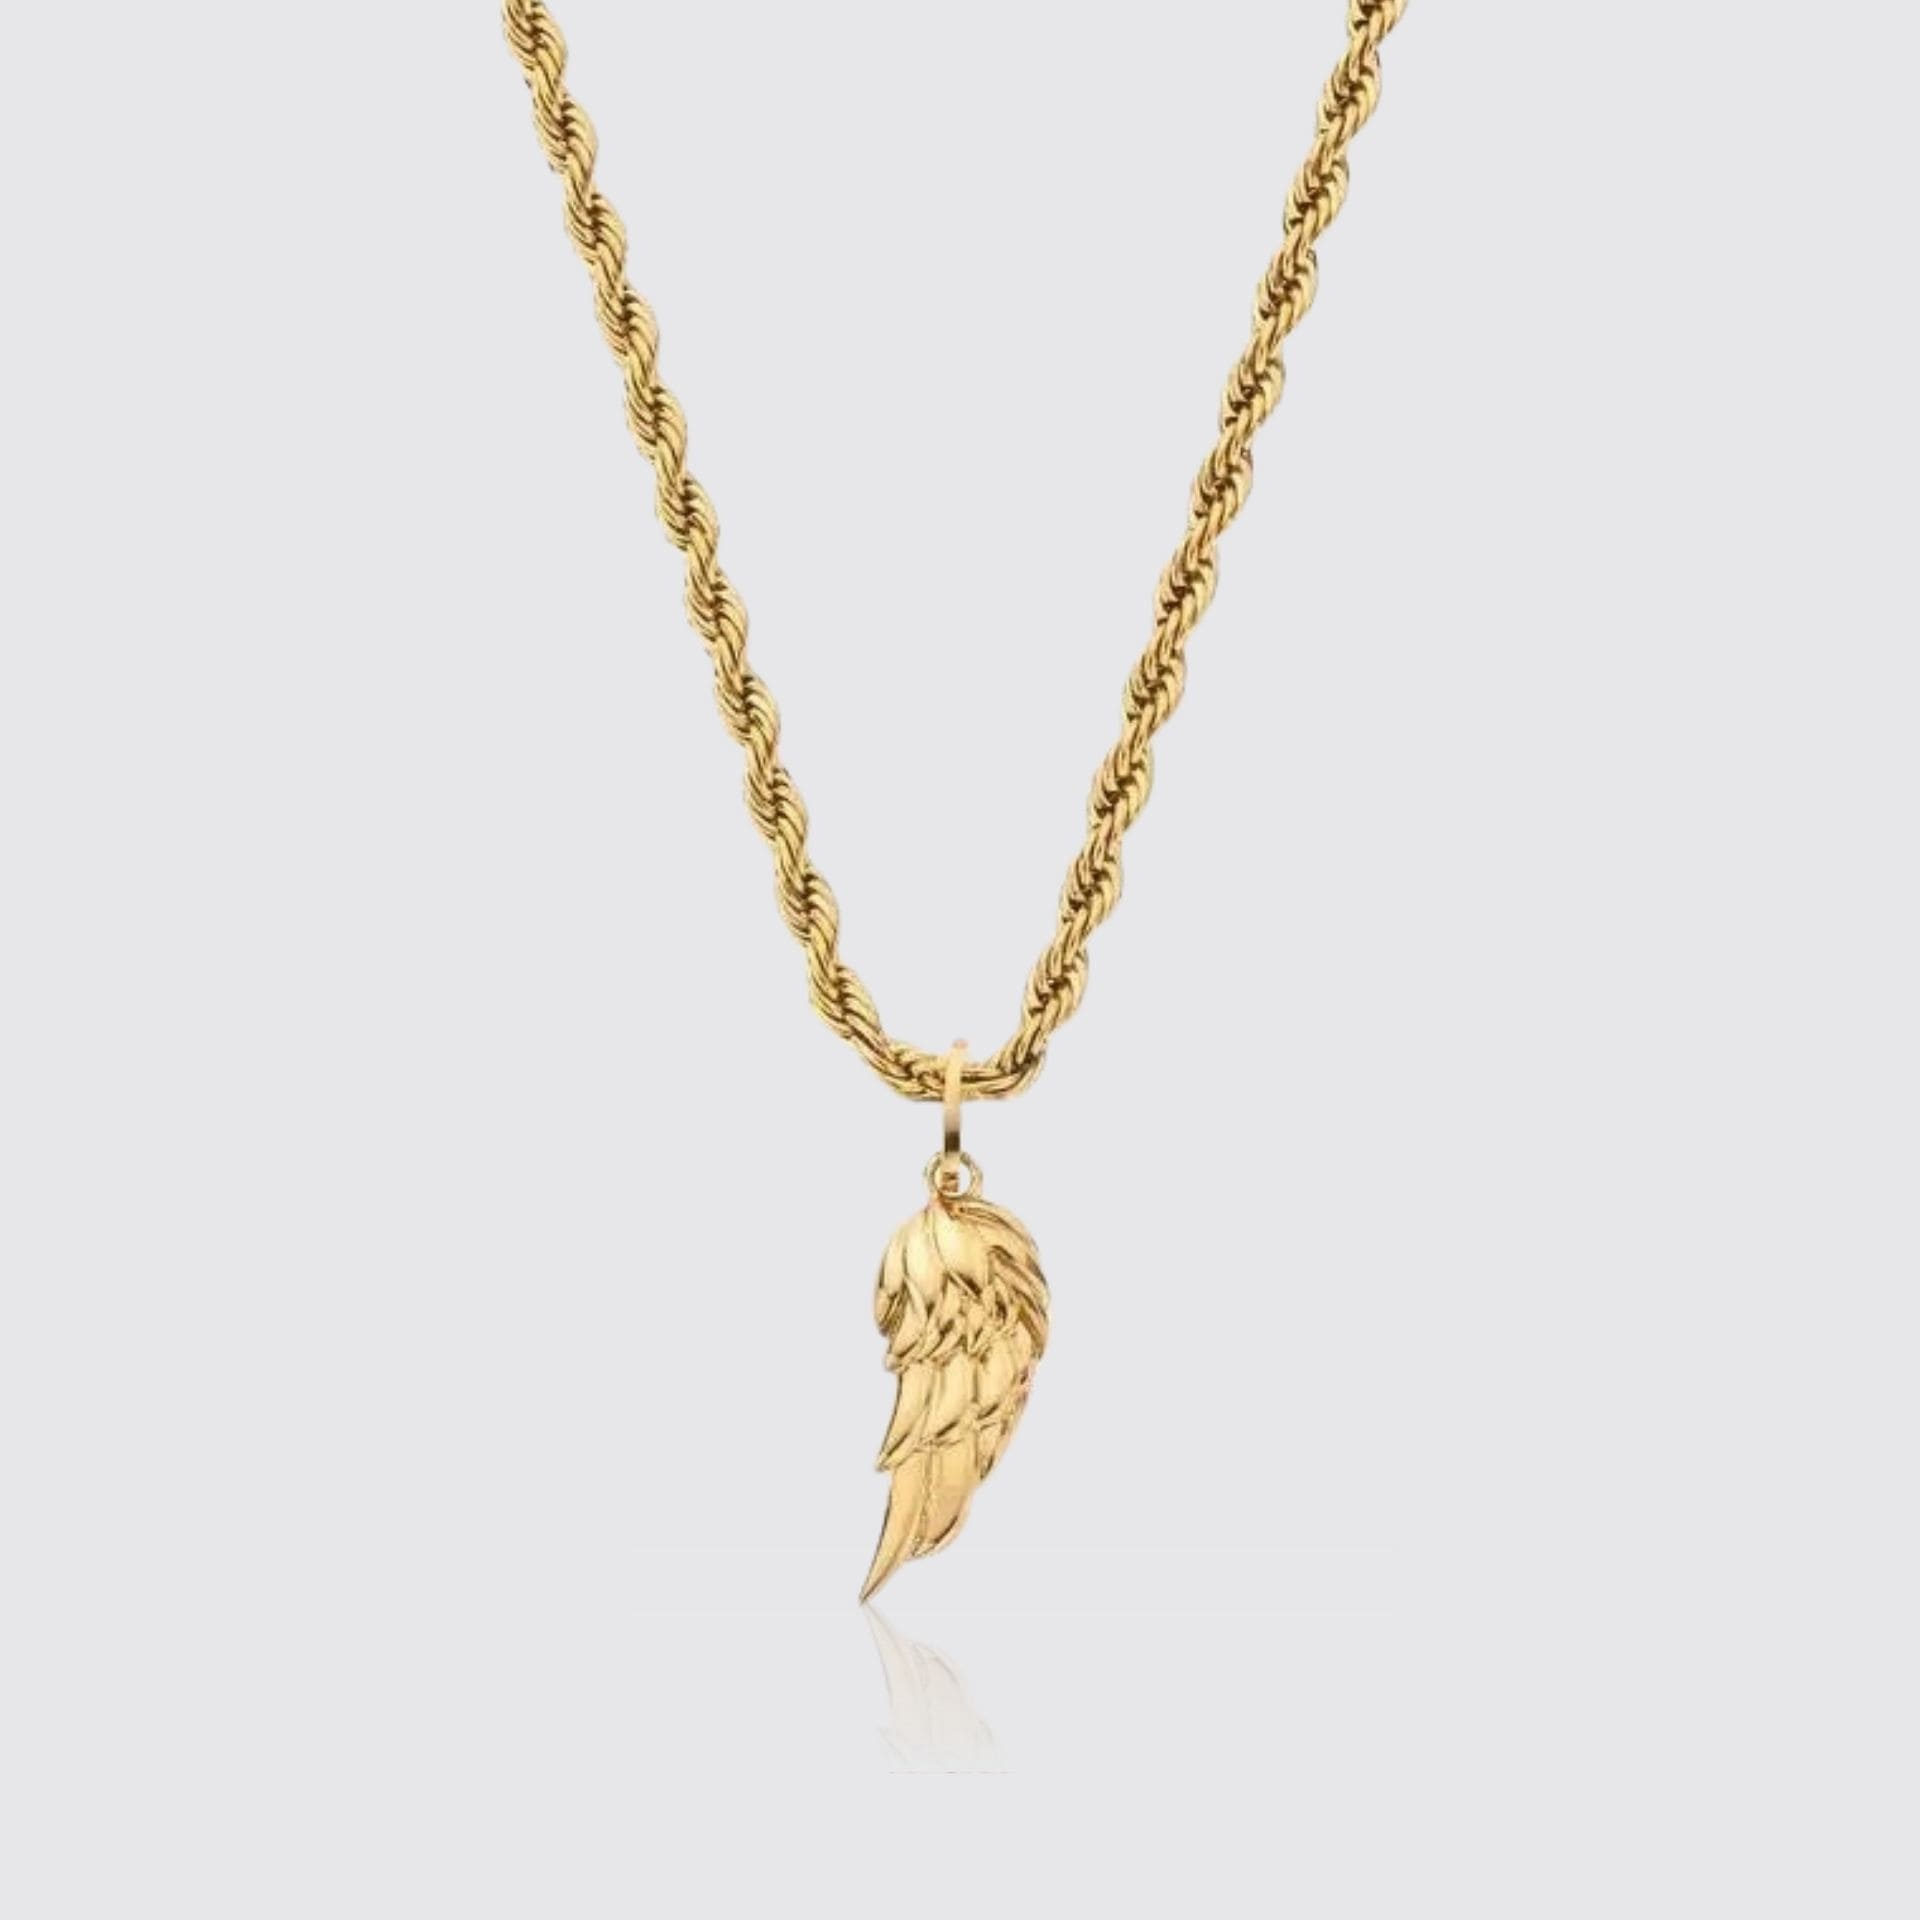 Flügel Kette Gold Damen Wings Chain